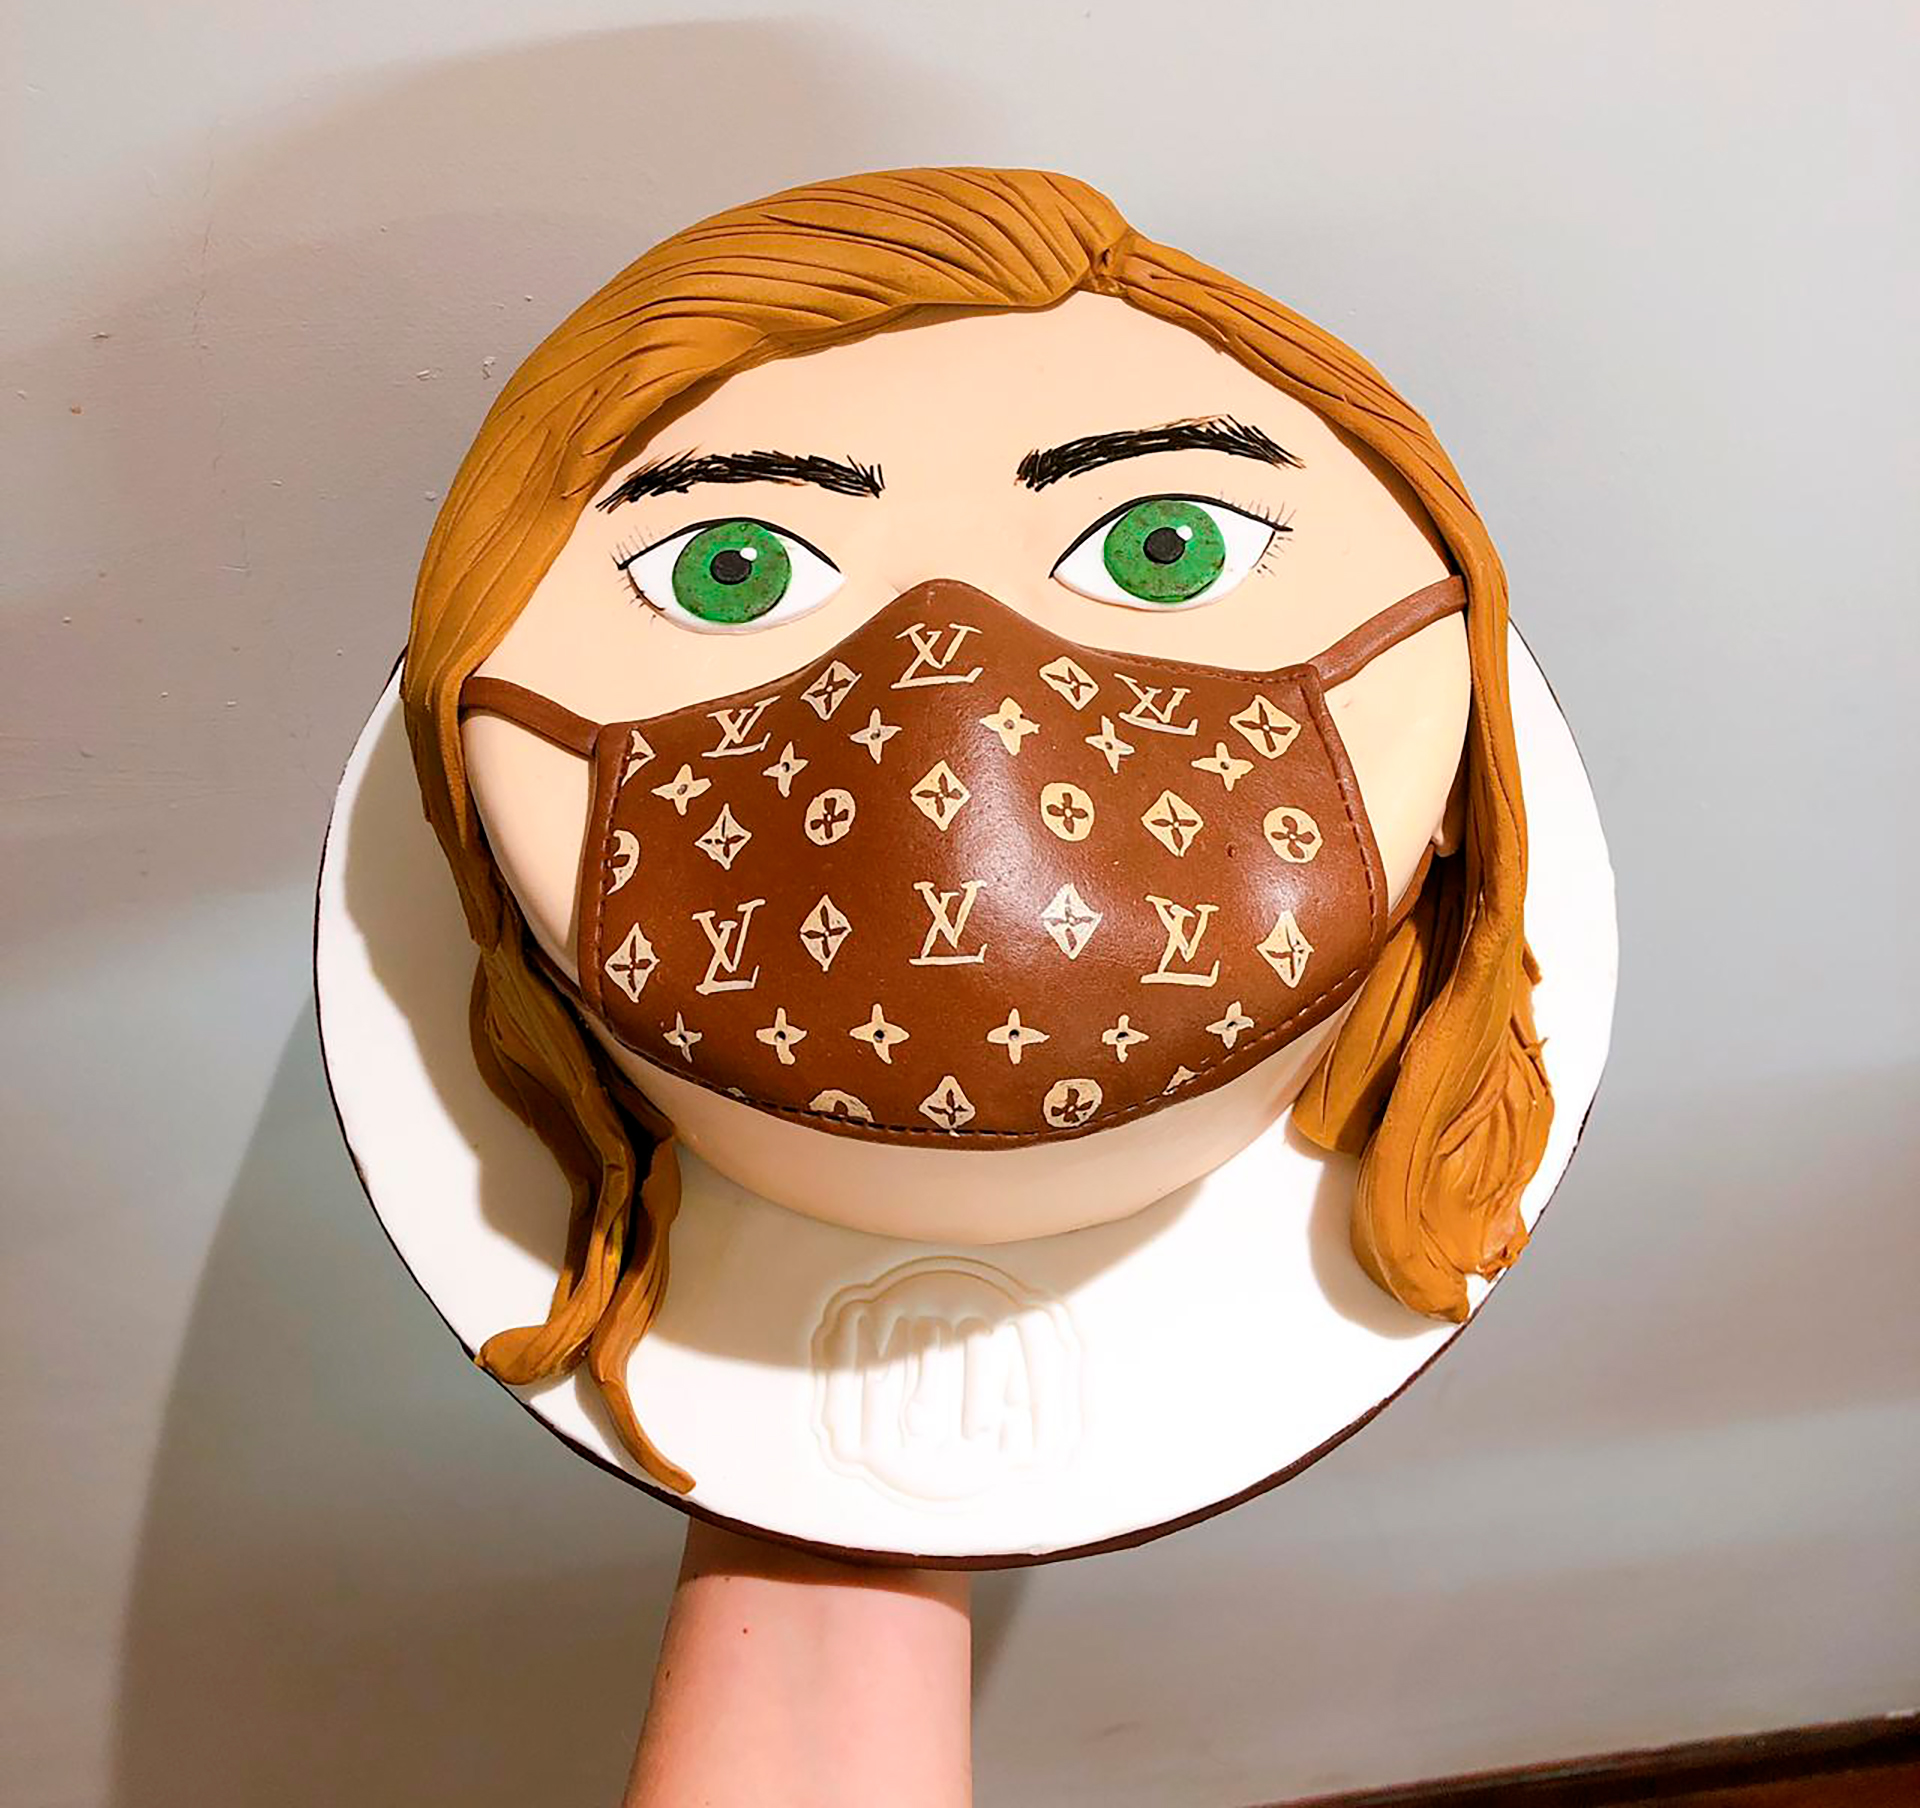 La torta con barbijo by Moca Bakery (Fotos: @mocabycatamoroni)